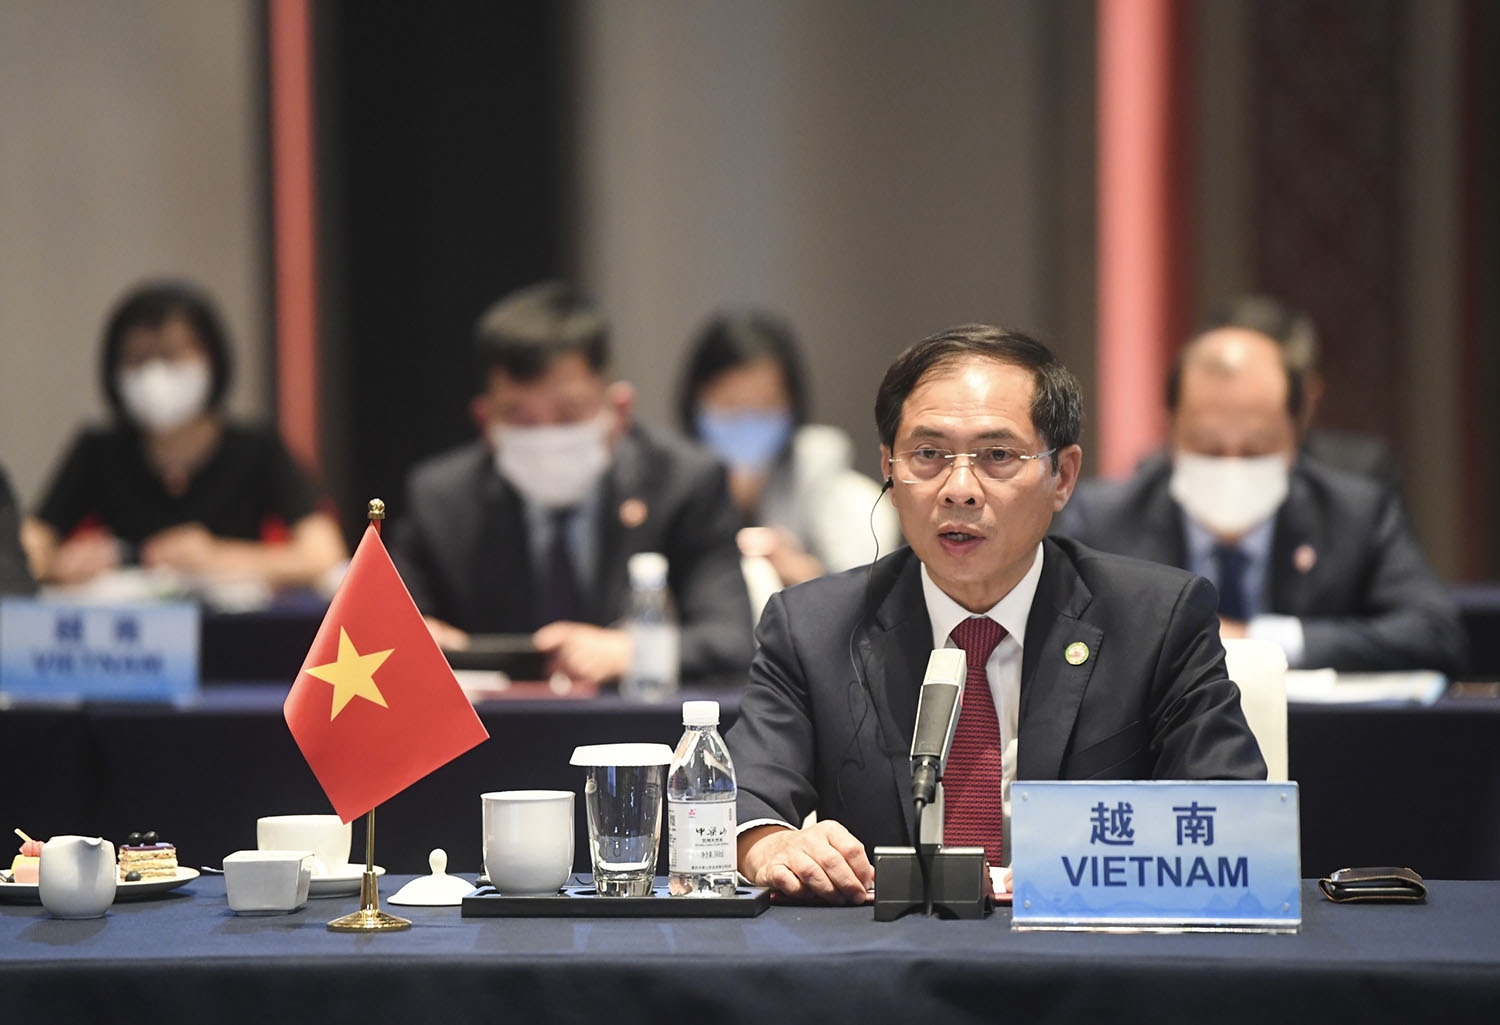 Các nước đánh giá cao đóng góp tích cực và hiệu quả của Việt Nam tại Hội nghị Bộ trưởng Ngoại giao ASEAN-Trung Quốc và Mekong-Lan Thương